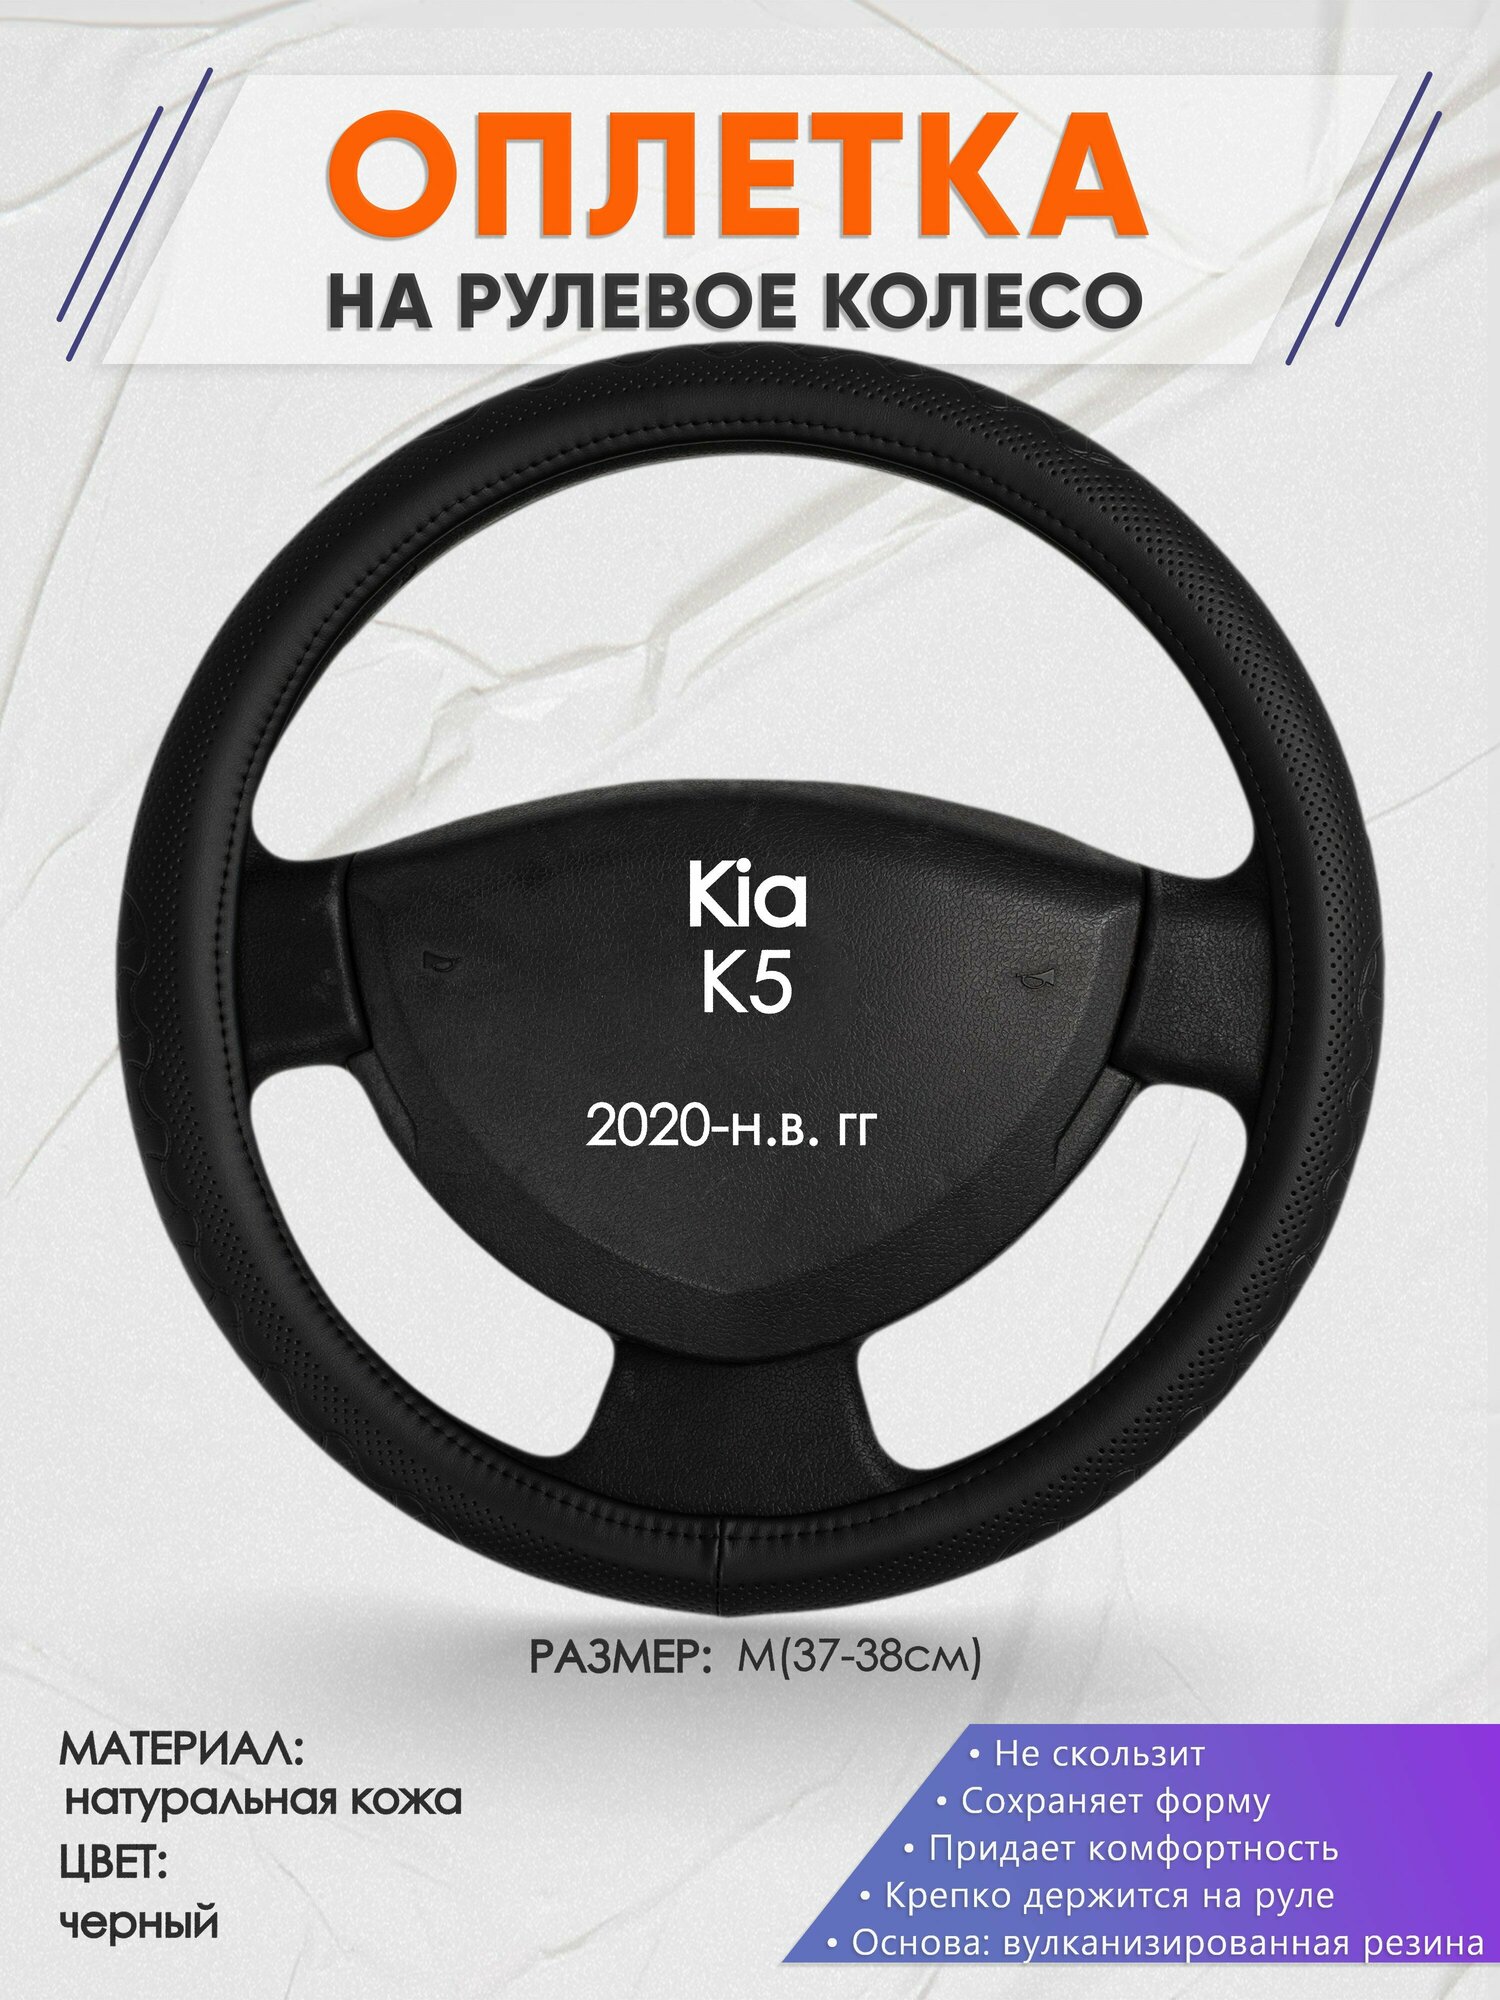 Оплетка на руль для Kia K5 (Киа К5) 2020-н. в, M(37-38см), Натуральная кожа 25